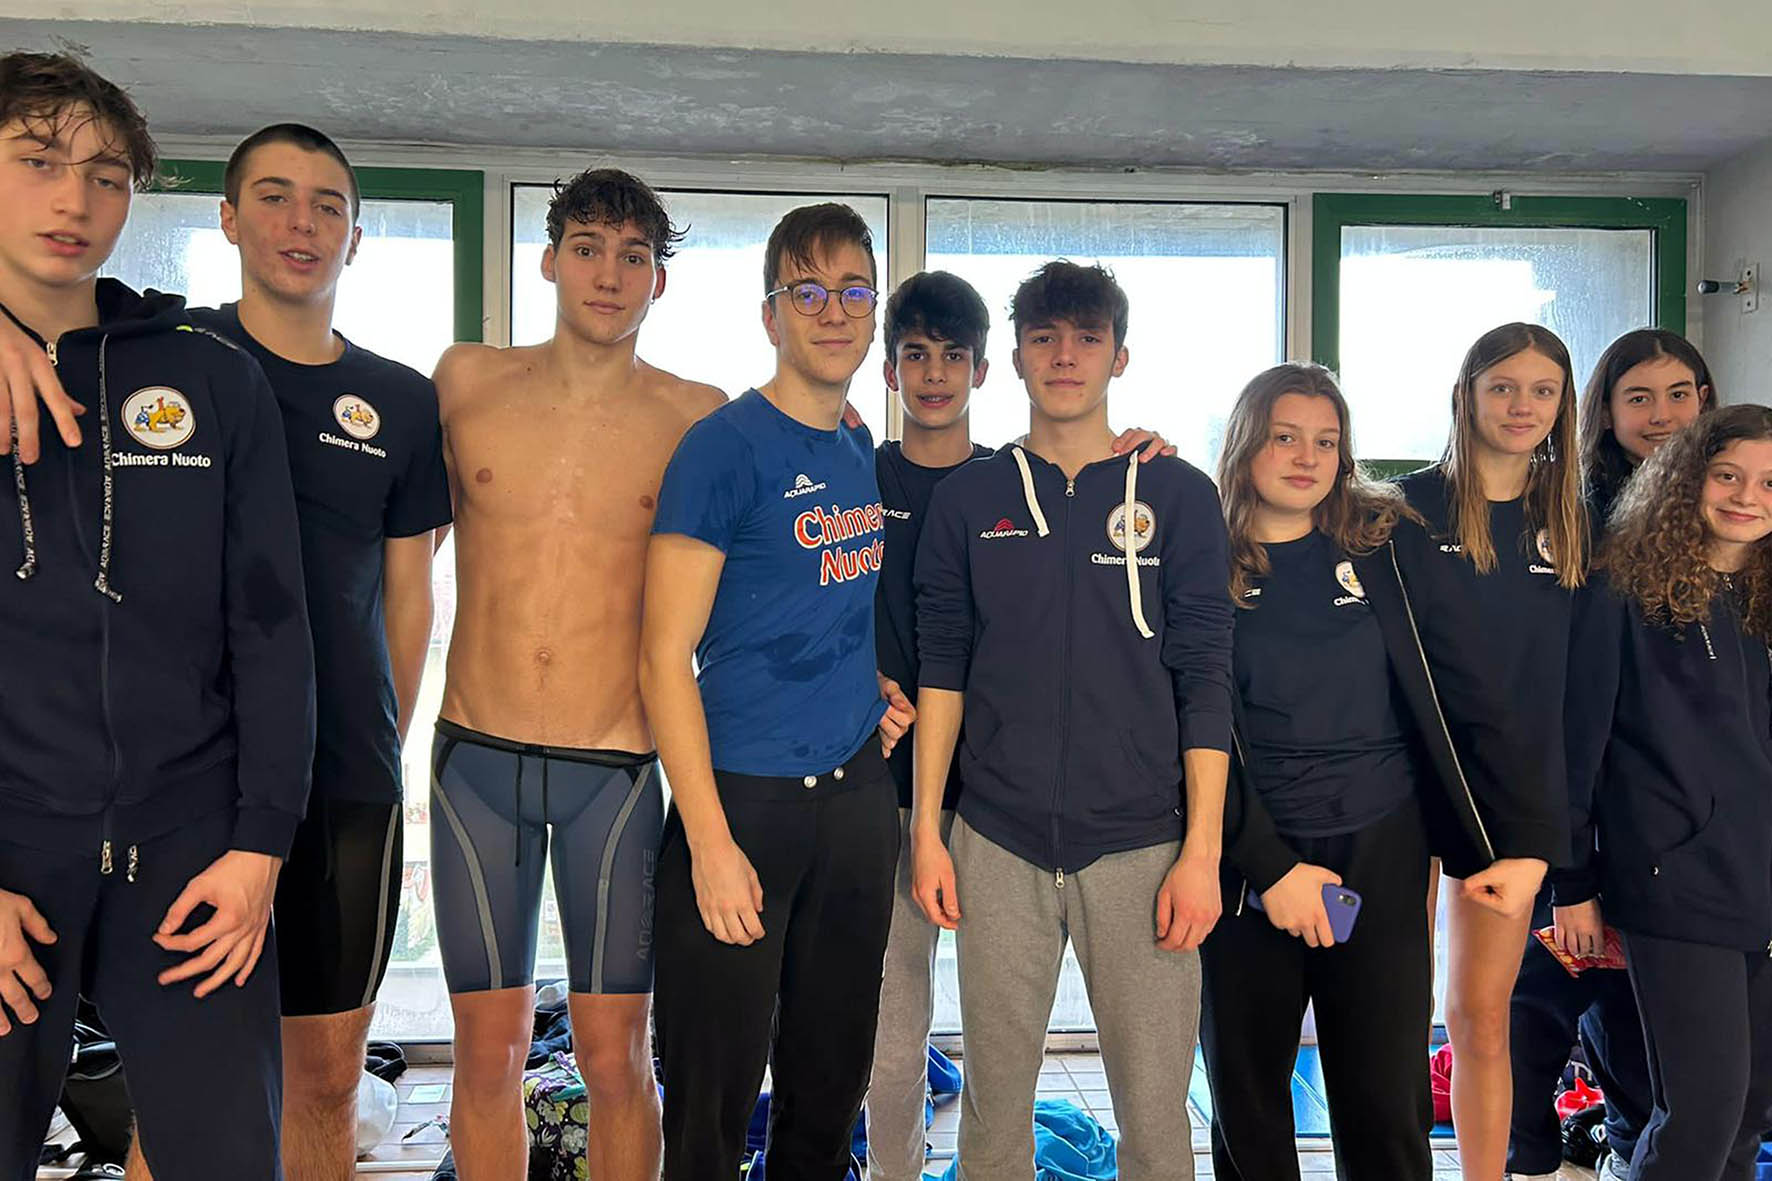 Ottimi risultati per la Chimera Nuoto in vista dei Campionati Toscani Giovanili